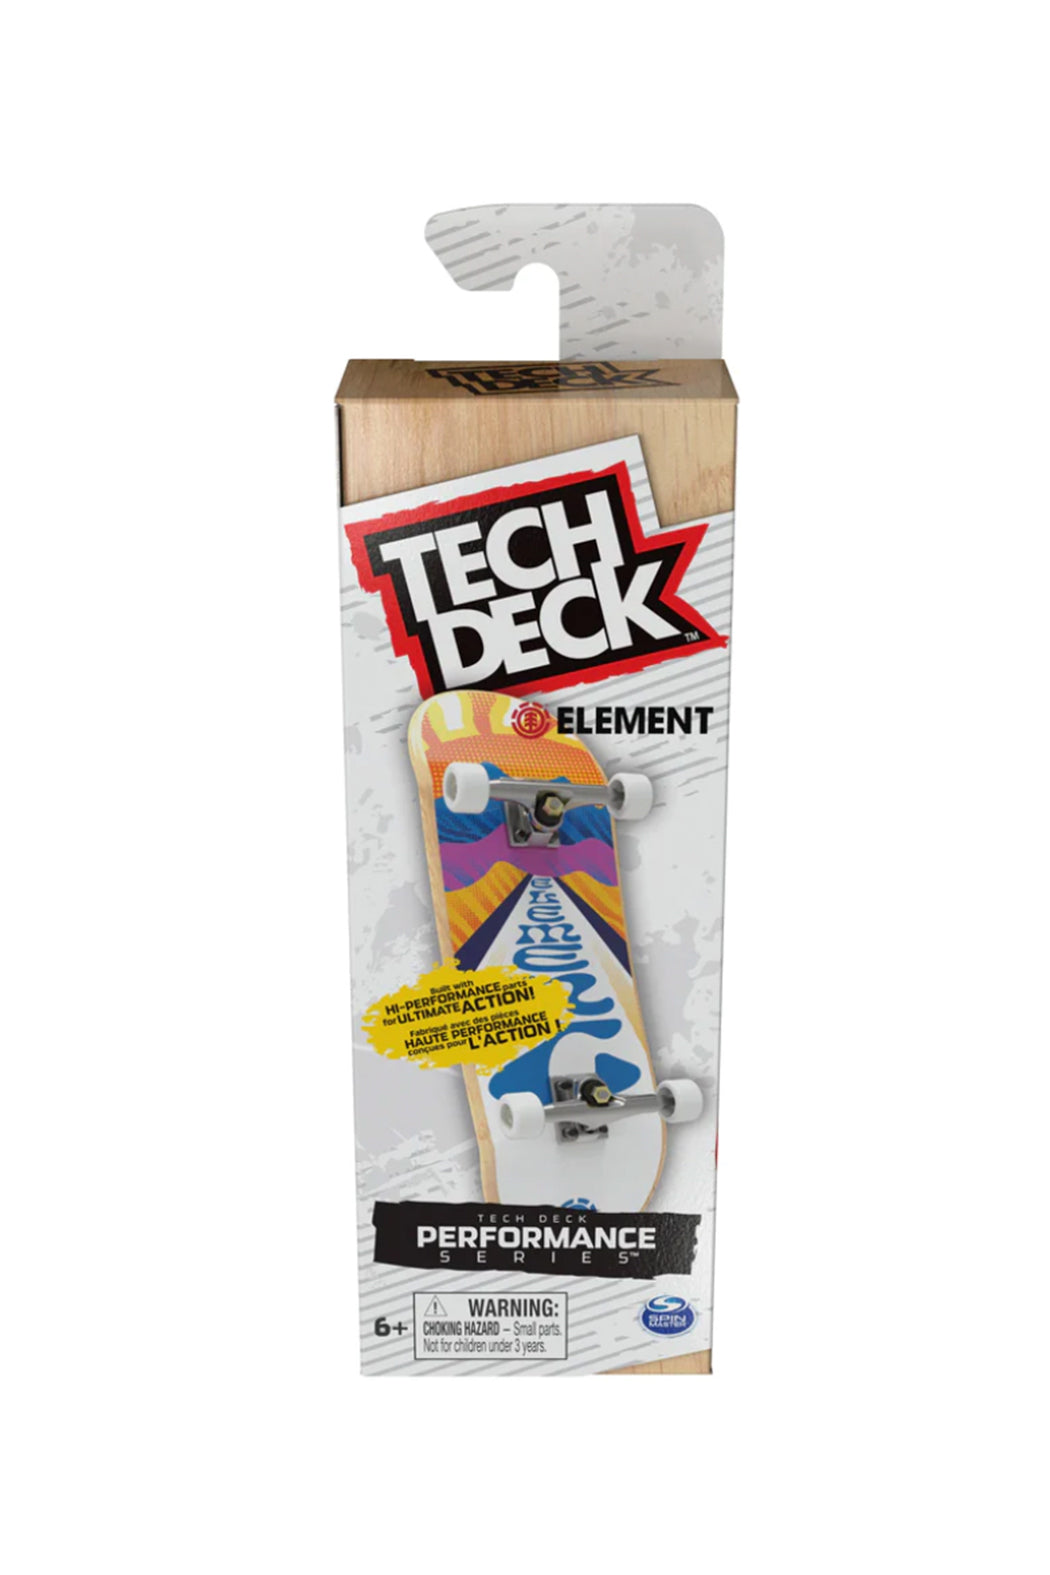 Tech Deck Performance Series